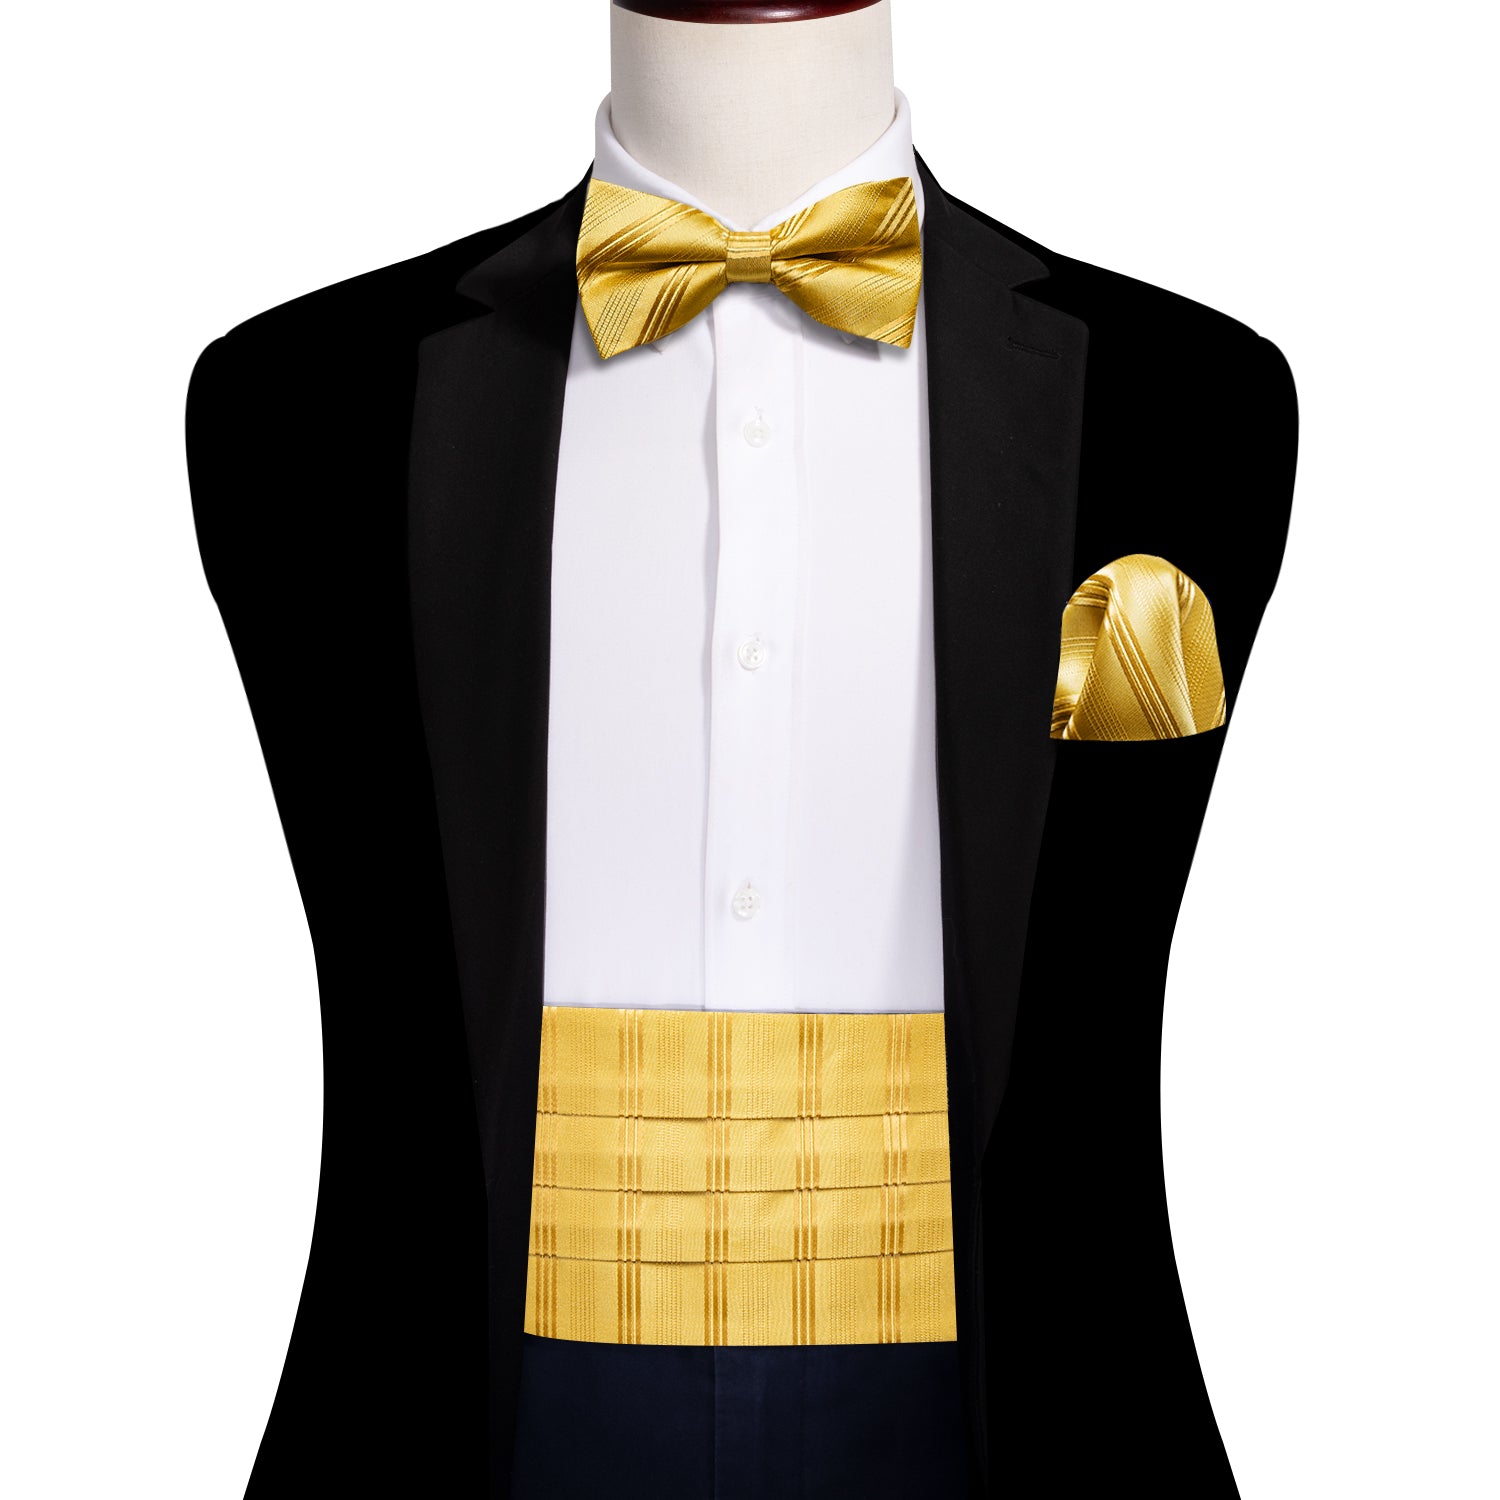 Gold Striped Cummerbund  Bow tie Handkerchief Cufflinks Set